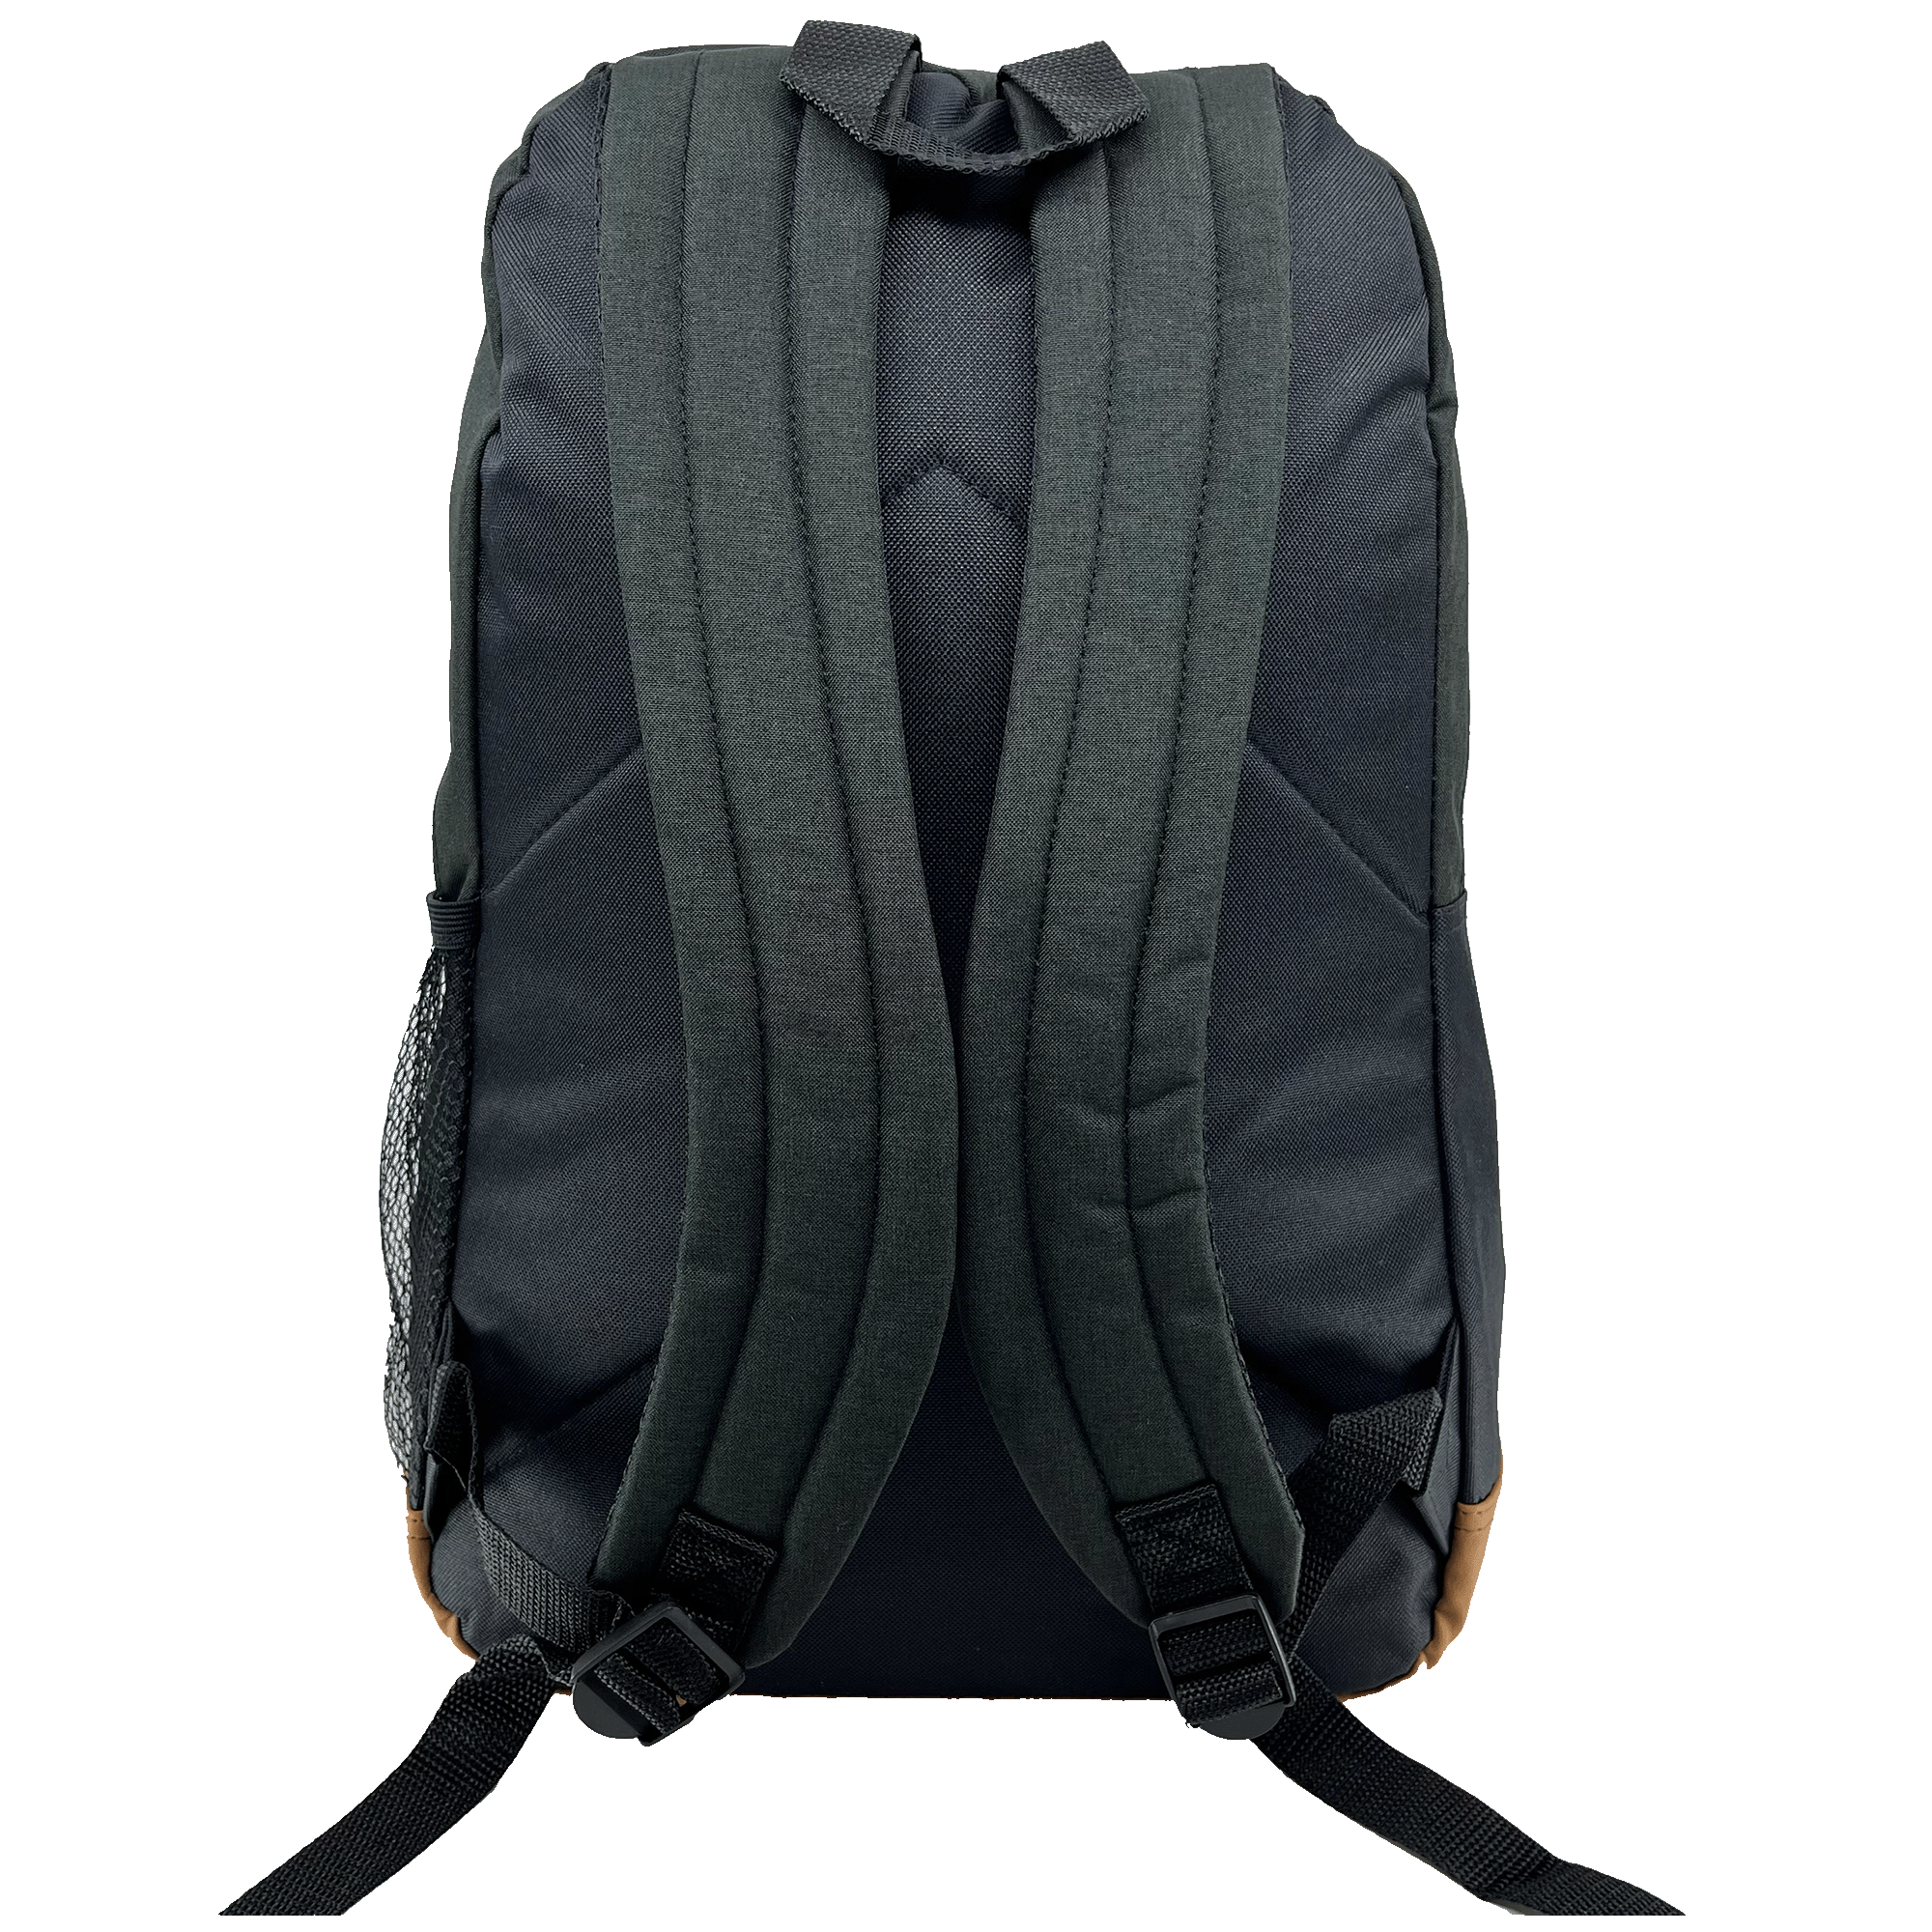 Backside view of black shoulder straps on a black Oaklandish school backpack.